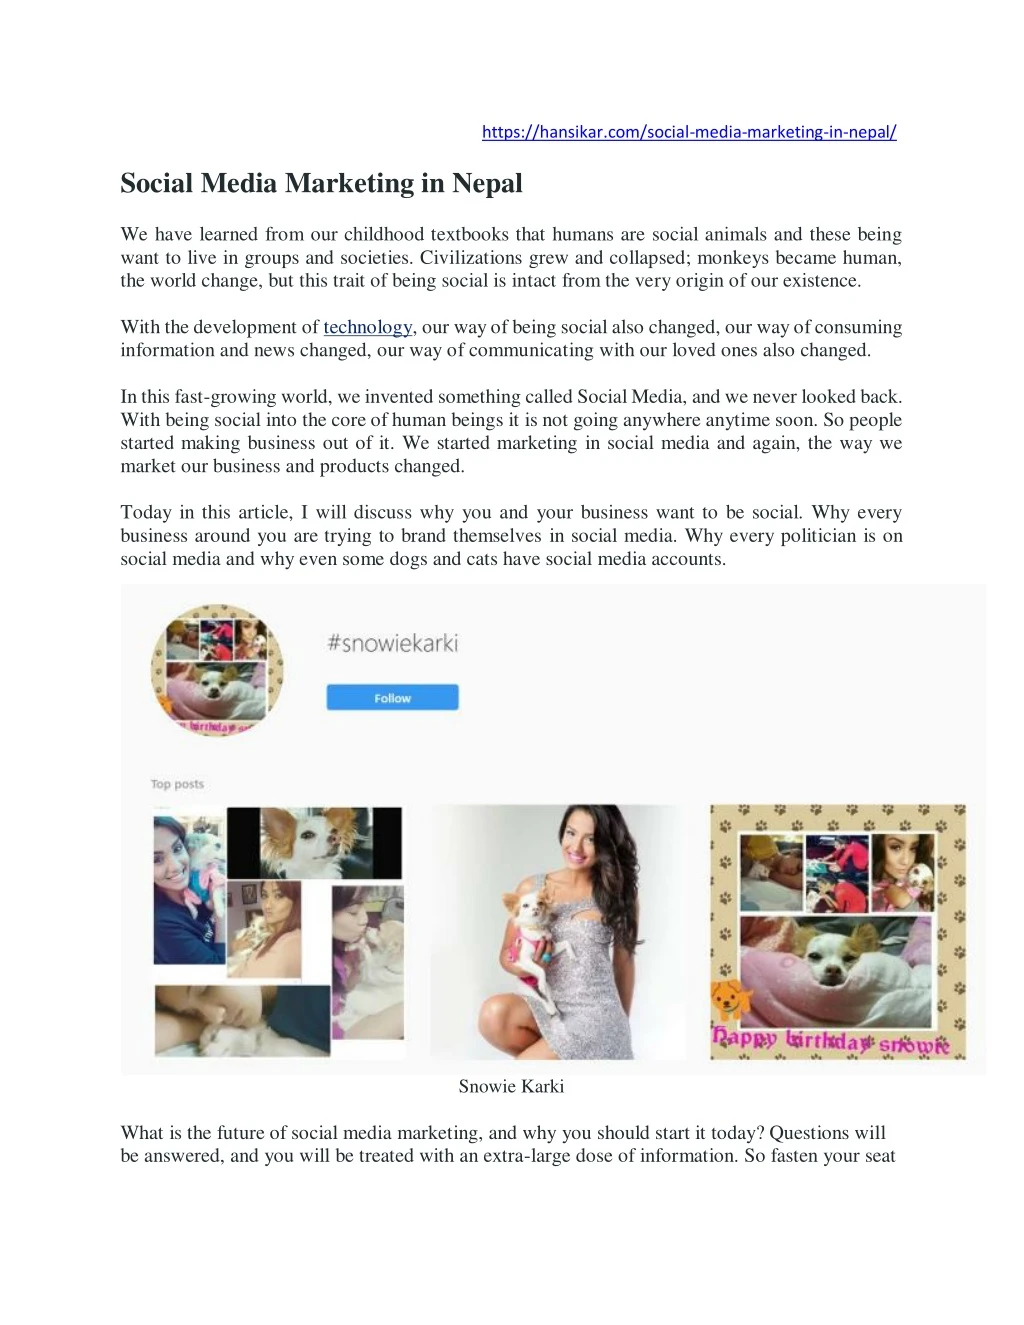 https hansikar com social media marketing in nepal